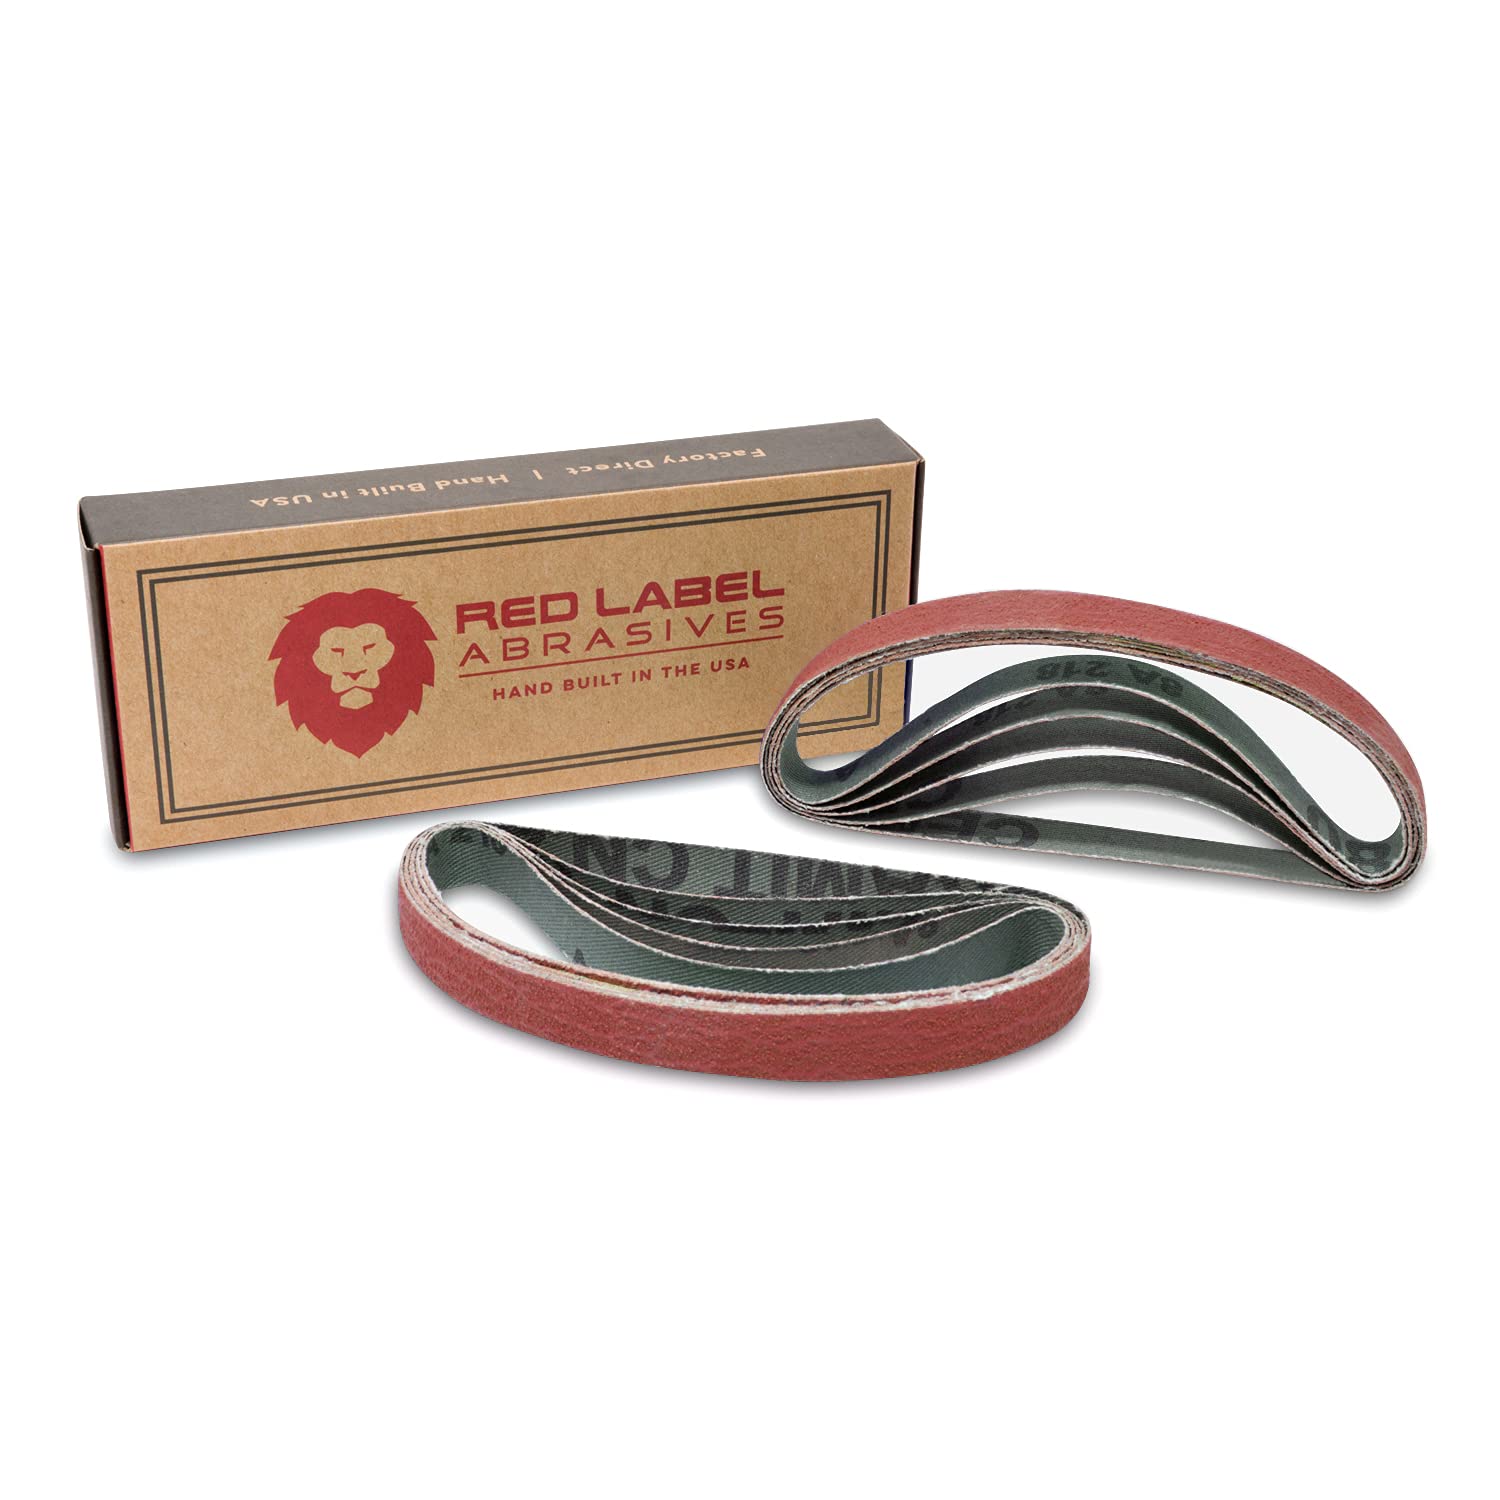 Red Label Abrasives 12 X 12 Inch Coarse P80 Grit Knife Sharpener Sanding Belts, 10 Pack (Compatible With Work Sharp Knif